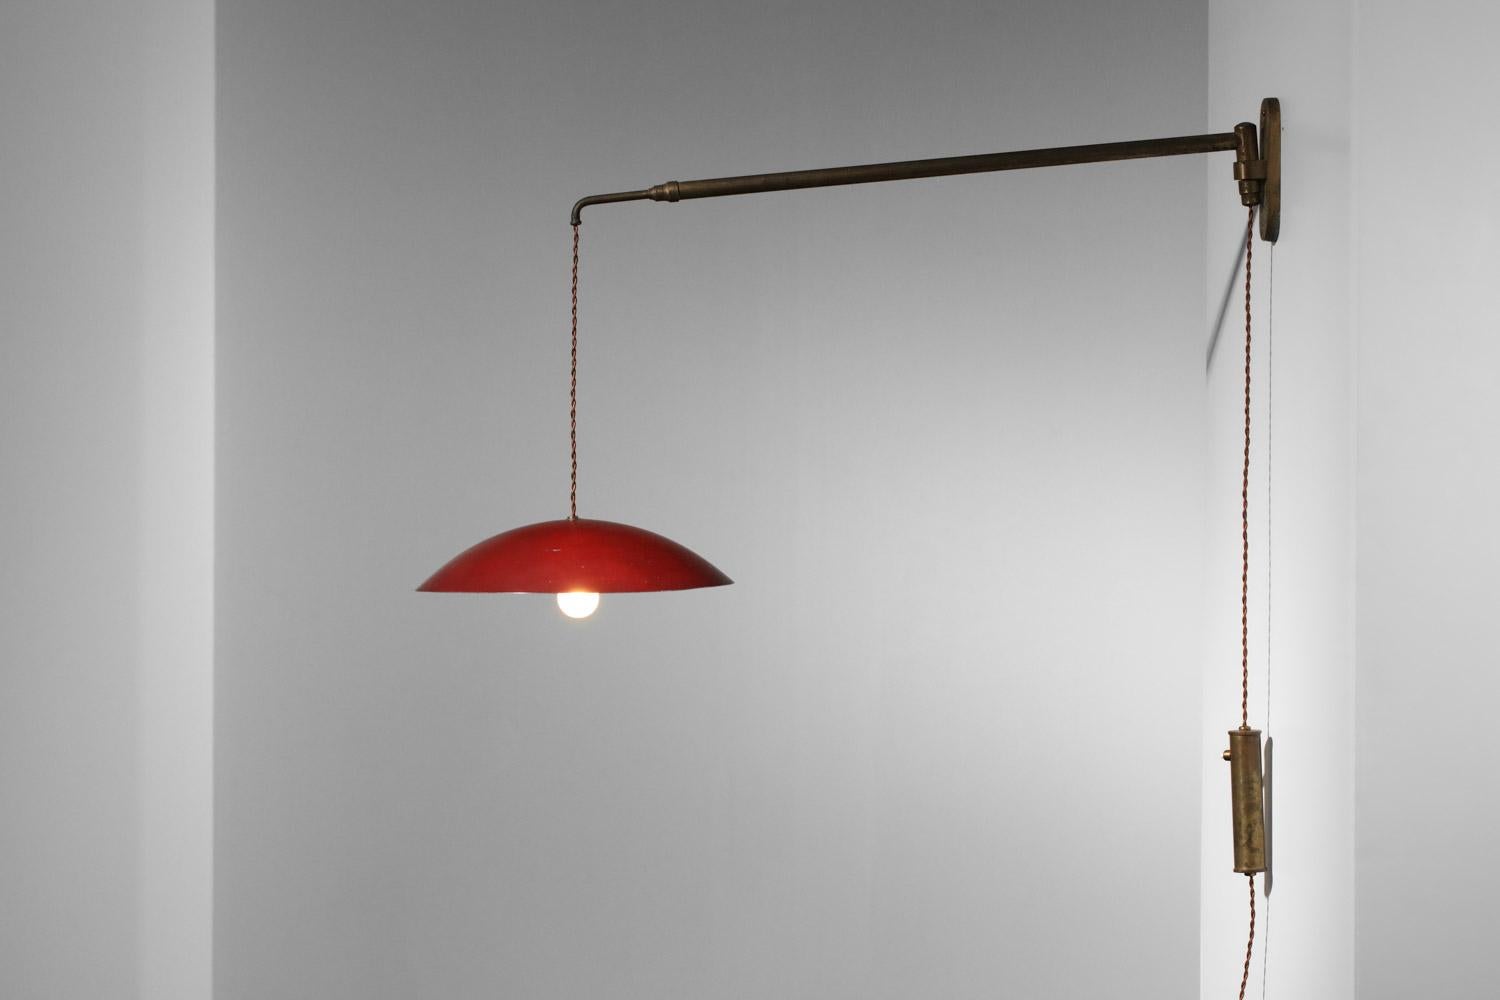 Italienischer Wandleuchter aus den 50er Jahren, der Arredoluce zugeschrieben wird. Struktur der Leuchte aus massivem patiniertem Messing, Lampenschirm aus rot lackiertem Metall (Originalfarbe). Mit dem Hebe- und Senk-System kann die Höhe des Schirms